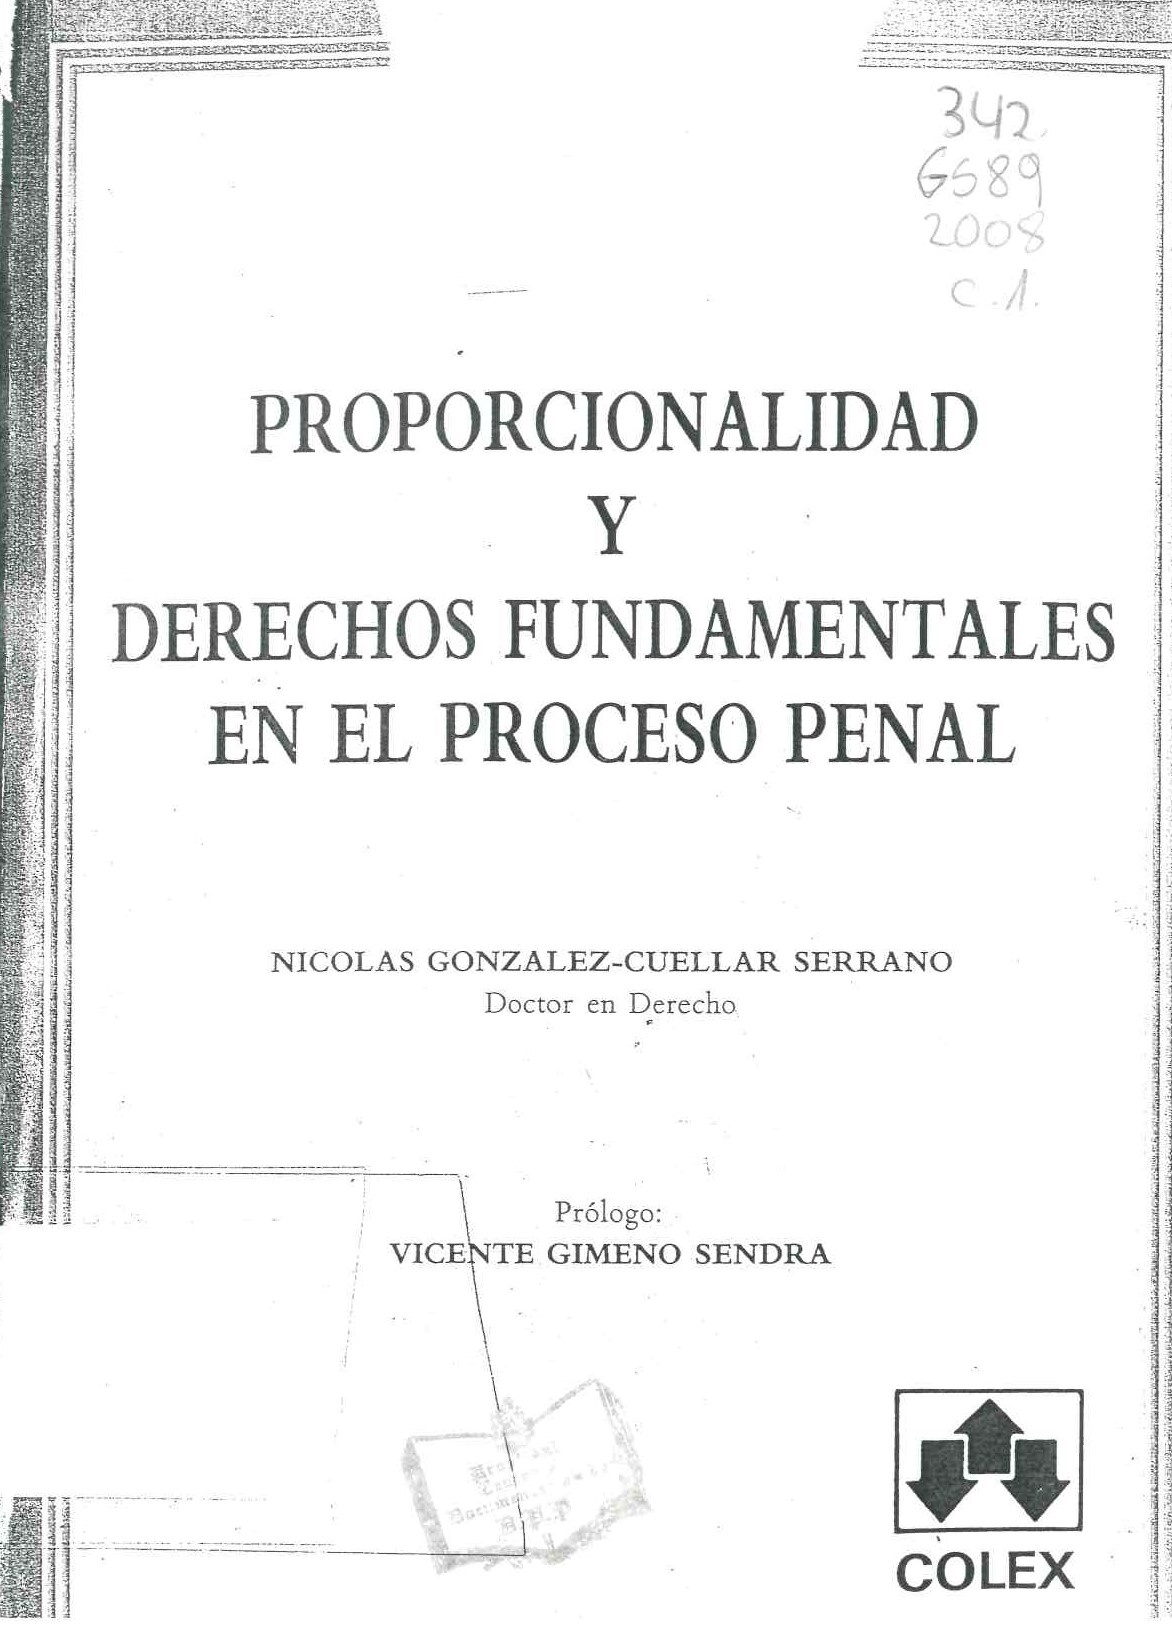 Proporcionalidad y derechos fundamentales en el proceso penal